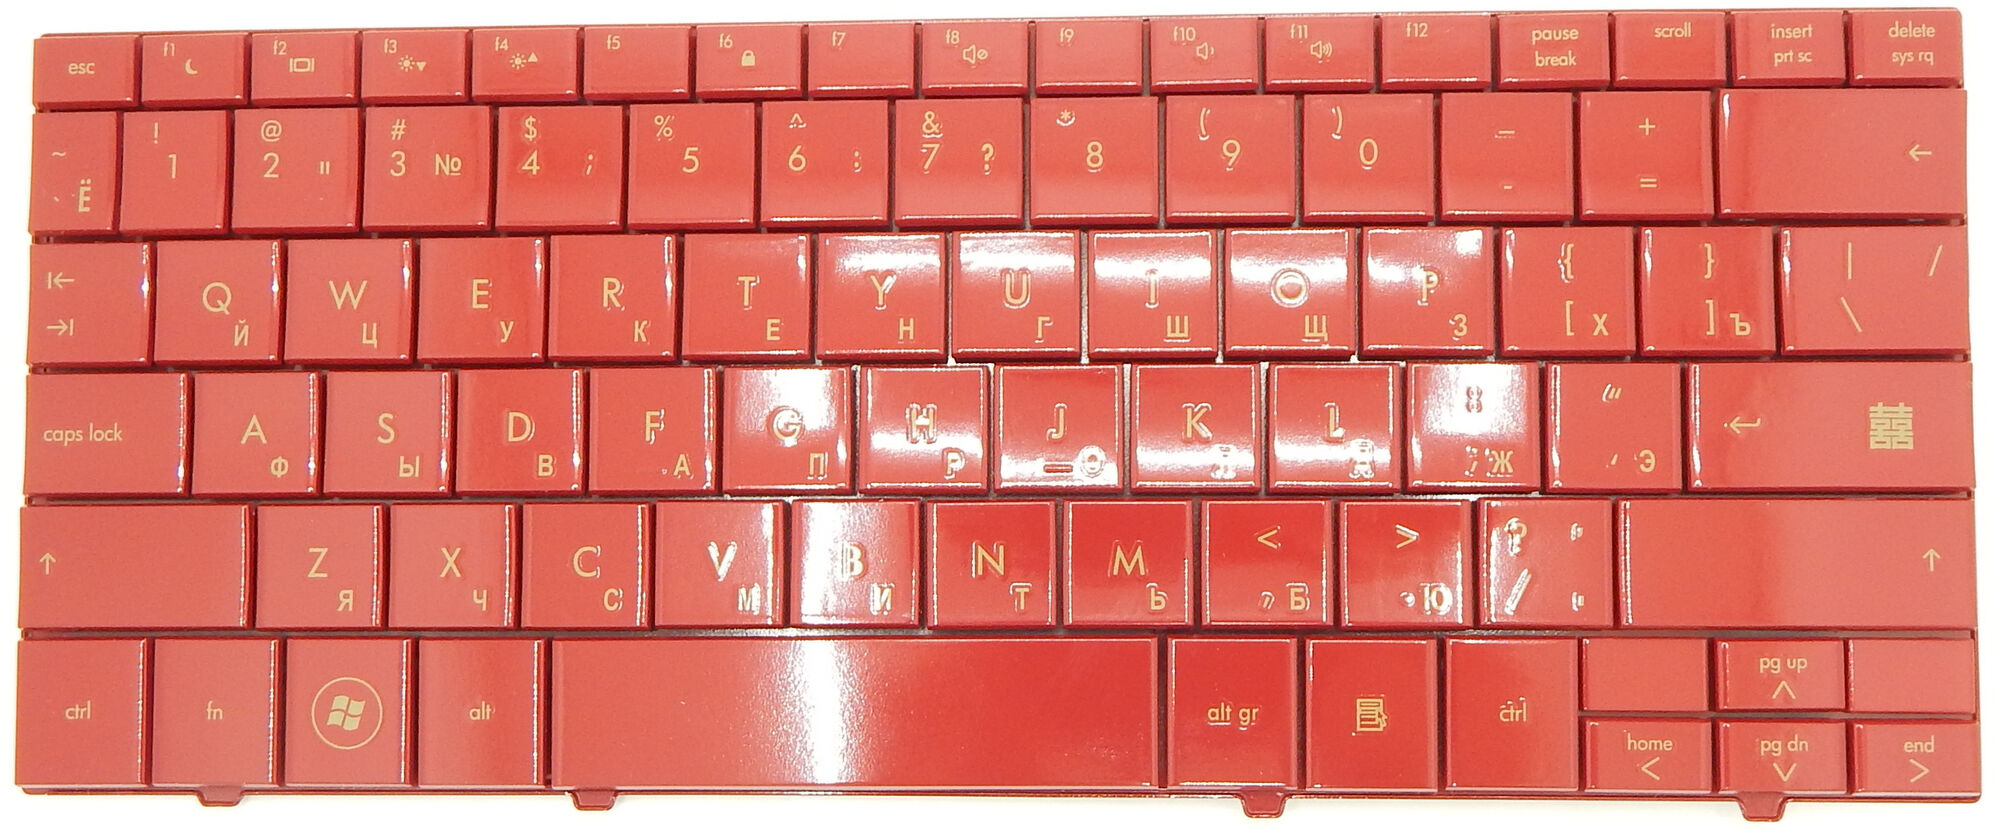 Клавиатура для HP Mini 1000 1100 Красная p/n: 496688-001, 504611-001, 6037B0035501, MP08C13US-930